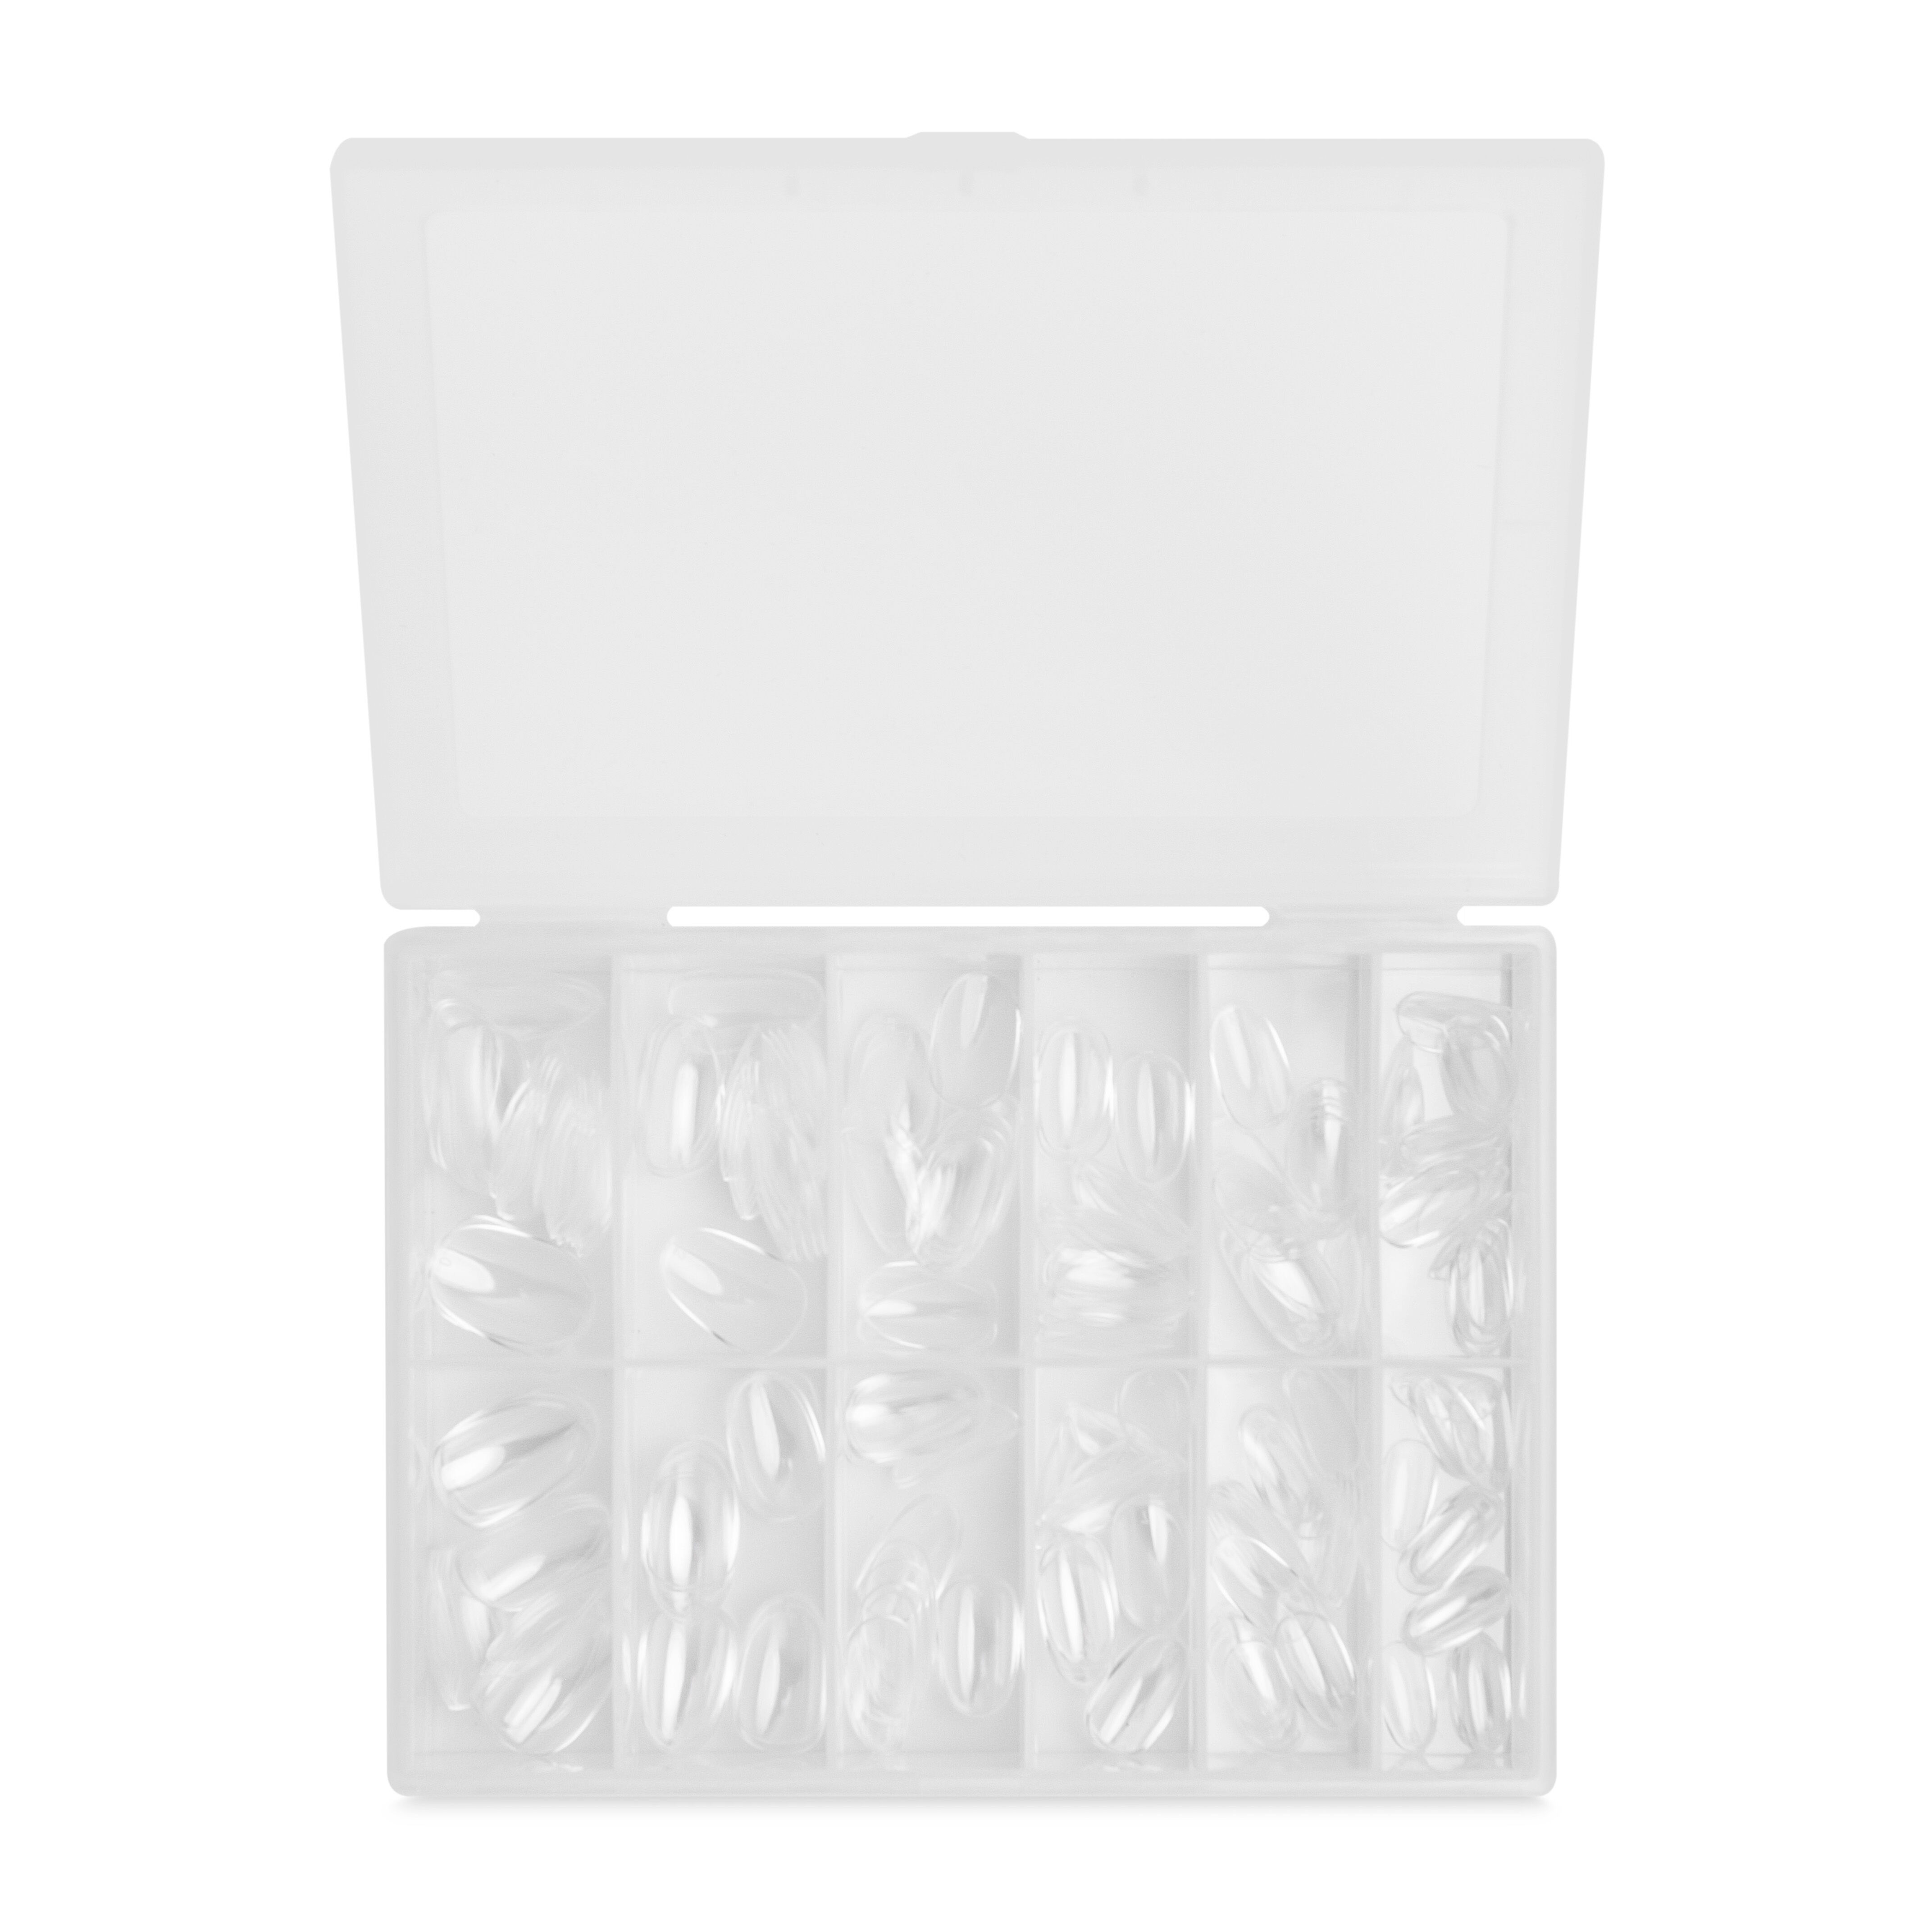 Искусственные ногти а13 натуральные Mani King Instant Nails Full Cover Tips, 240 шт/1 упаковка цена и фото